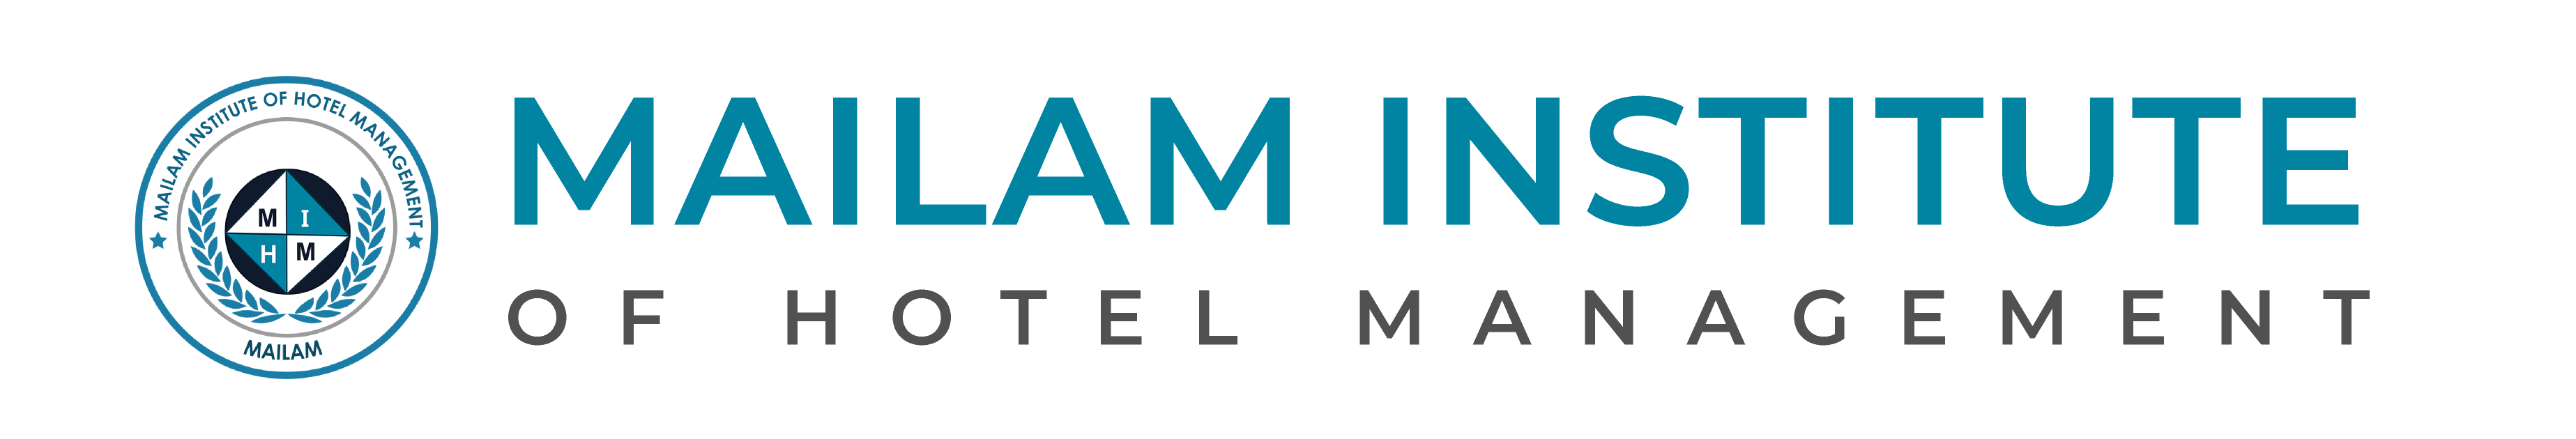 Mailam Institute of Hotel Management